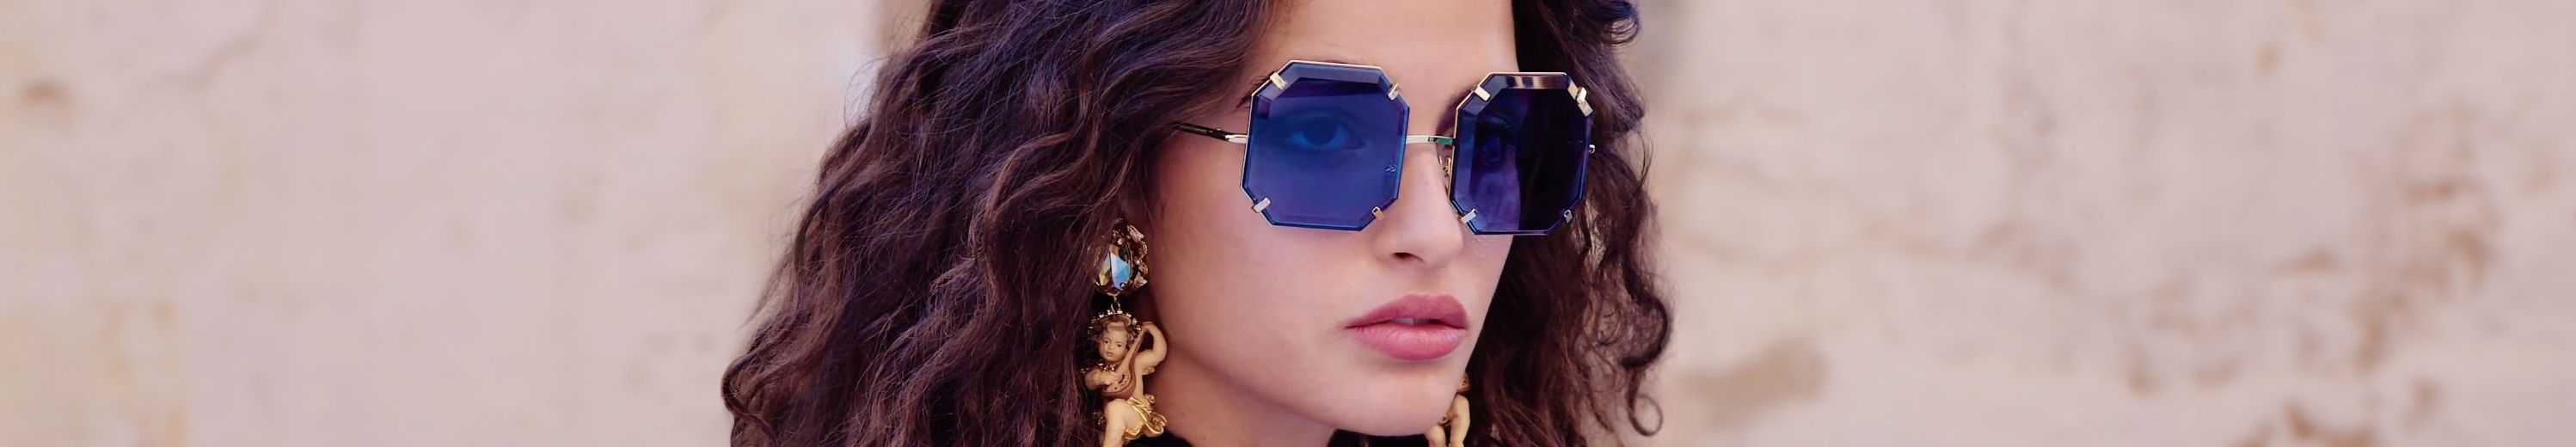 Geometric Sunglasses Frame for Men & Women